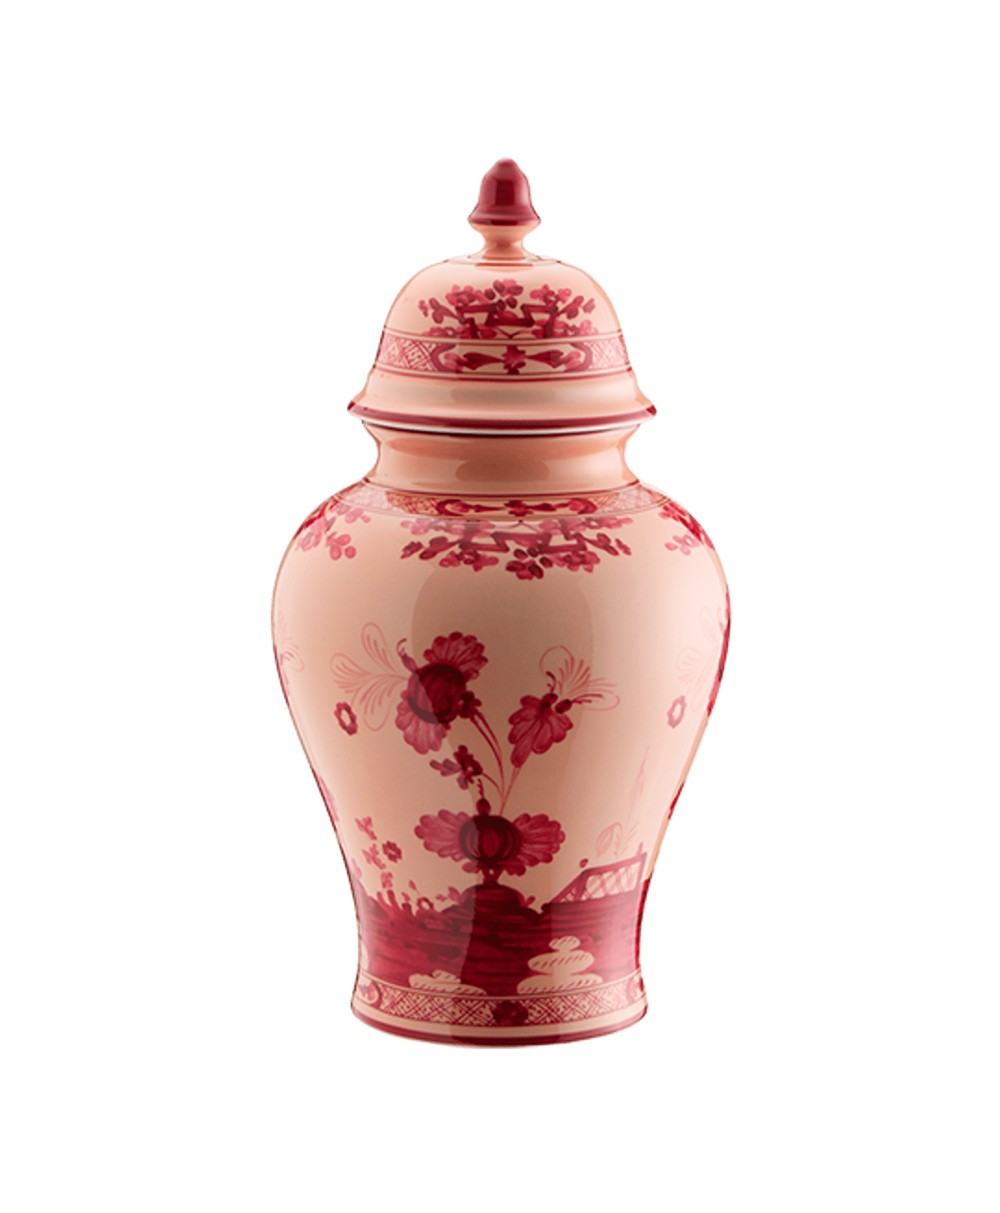 Produktbild "Oriente Vermiglio Potiche Vase" von Ginori 1735 im RAUM Concept store